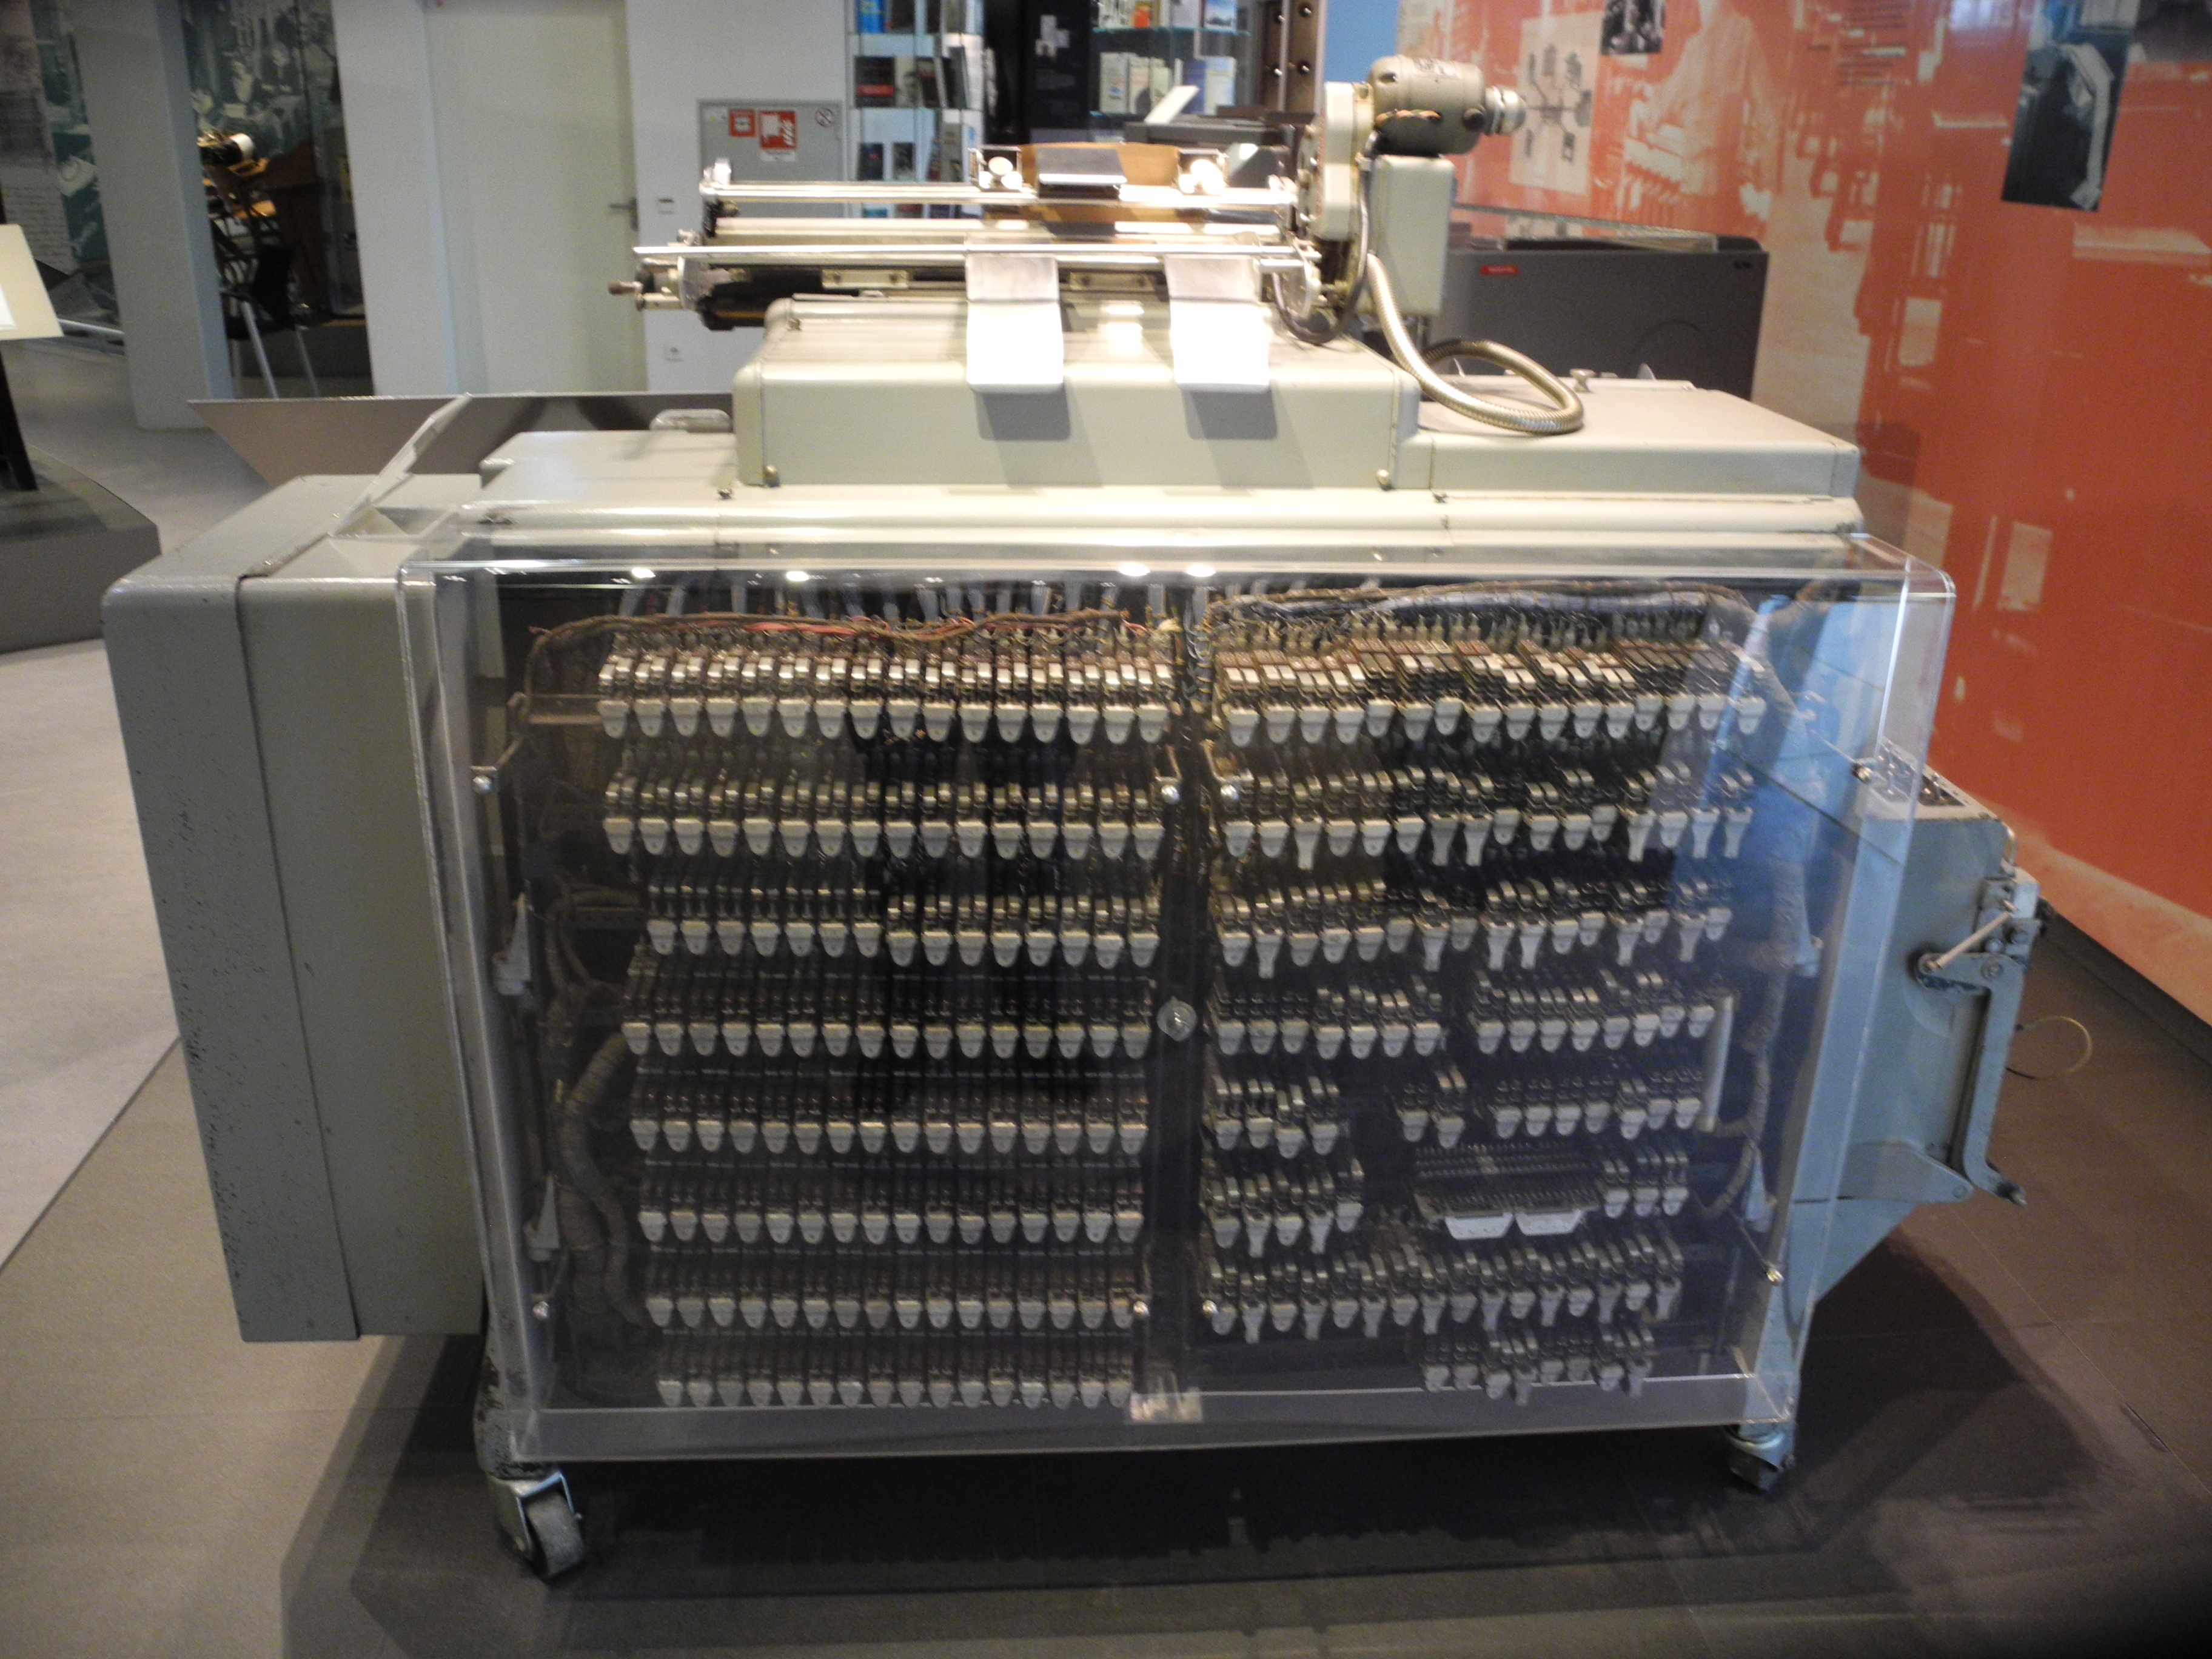 IBM 405 Tabelliermaschine (Heinz Nixdorf MuseumsForum CC BY-NC-SA)